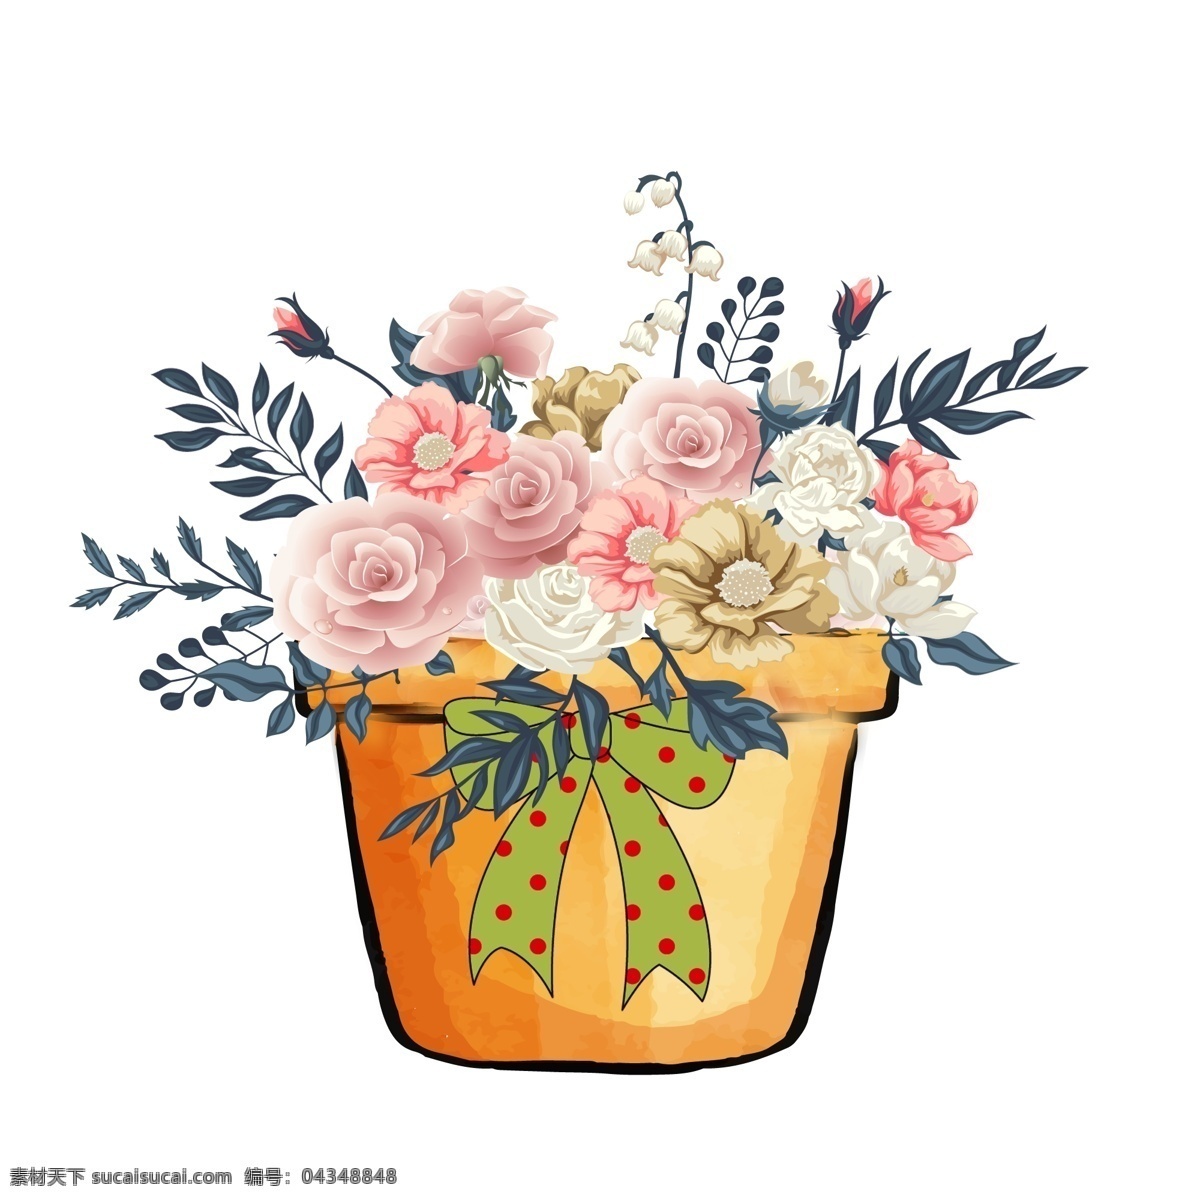 大卫 奥斯汀 花园 玫瑰 盆花 花园玫瑰 大卫奥斯汀 铃兰 盆 蝴蝶结 瓶花 装饰图案